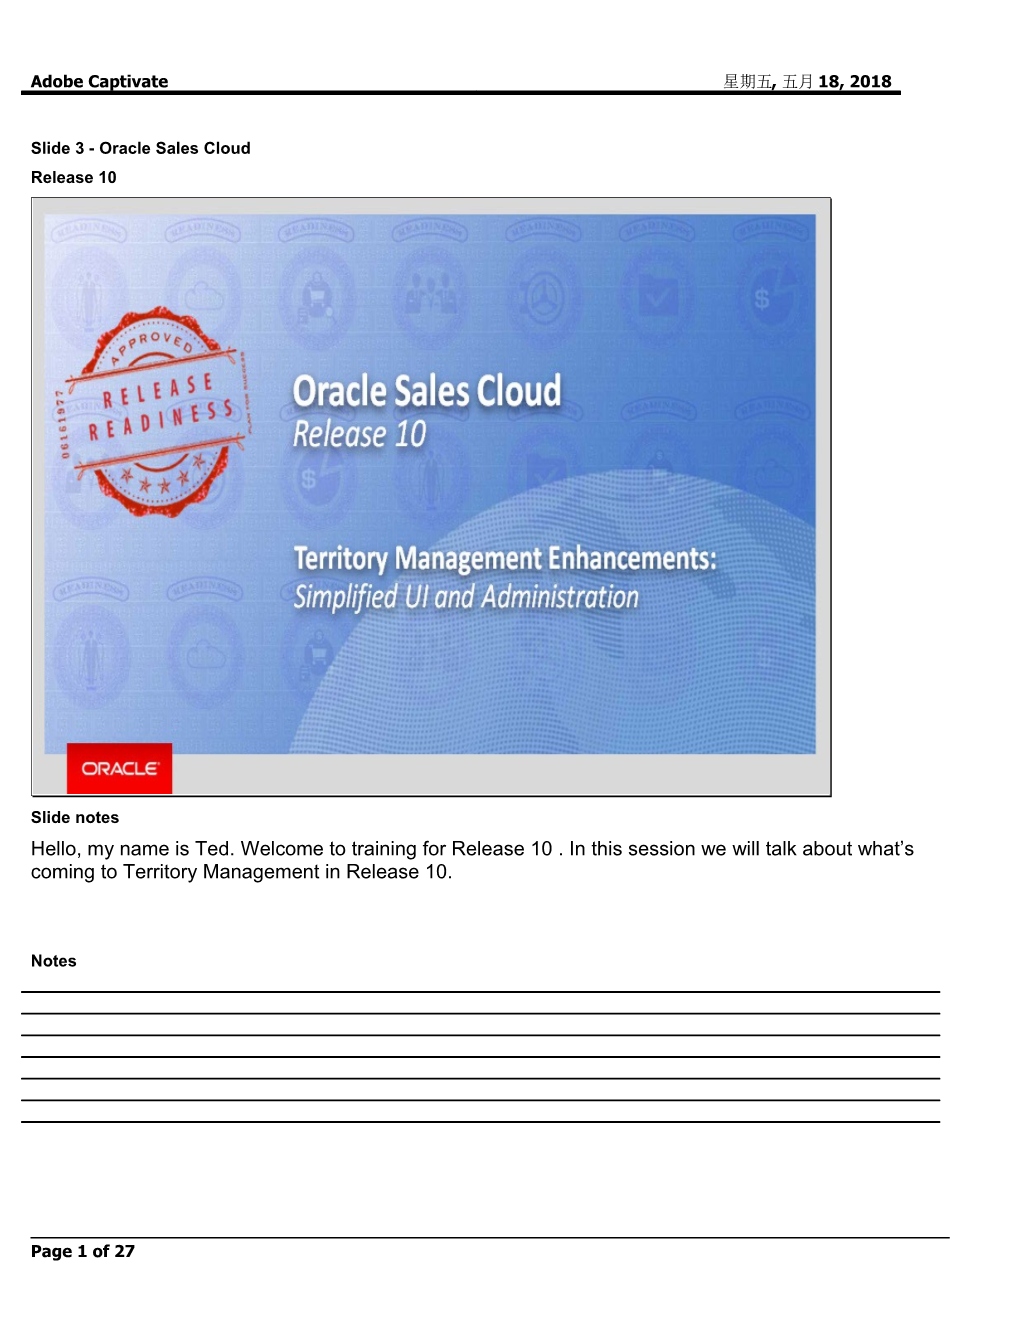 Slide 3 - Oracle Sales Cloud